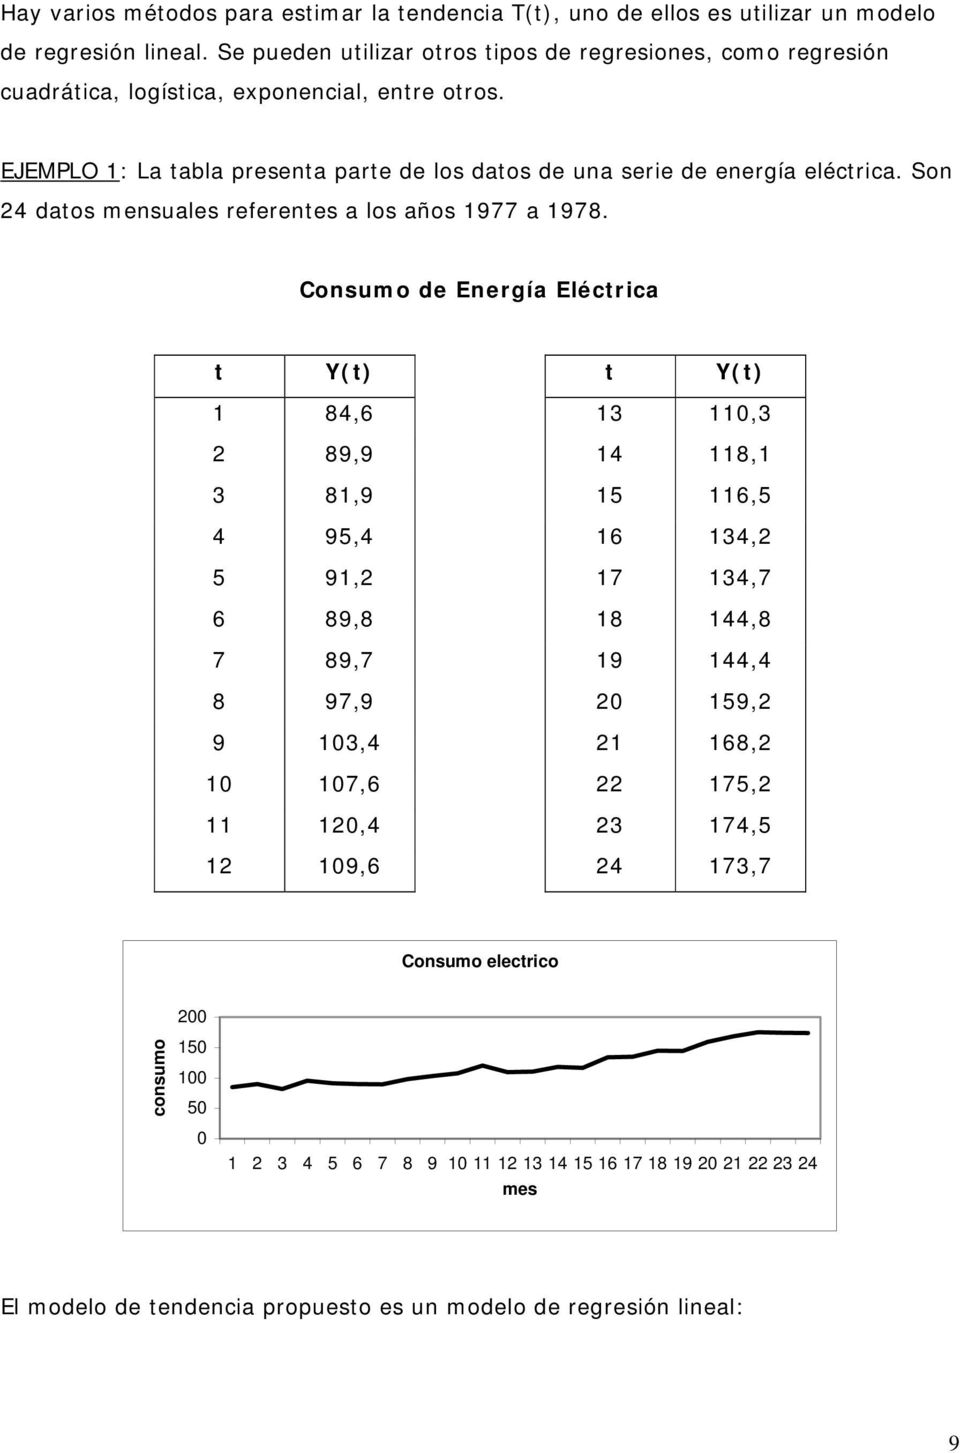 EJEMPLO 1: La tabla presenta parte de los datos de una serie de energía eléctrica. Son 24 datos mensuales referentes a los años 1977 a 1978.